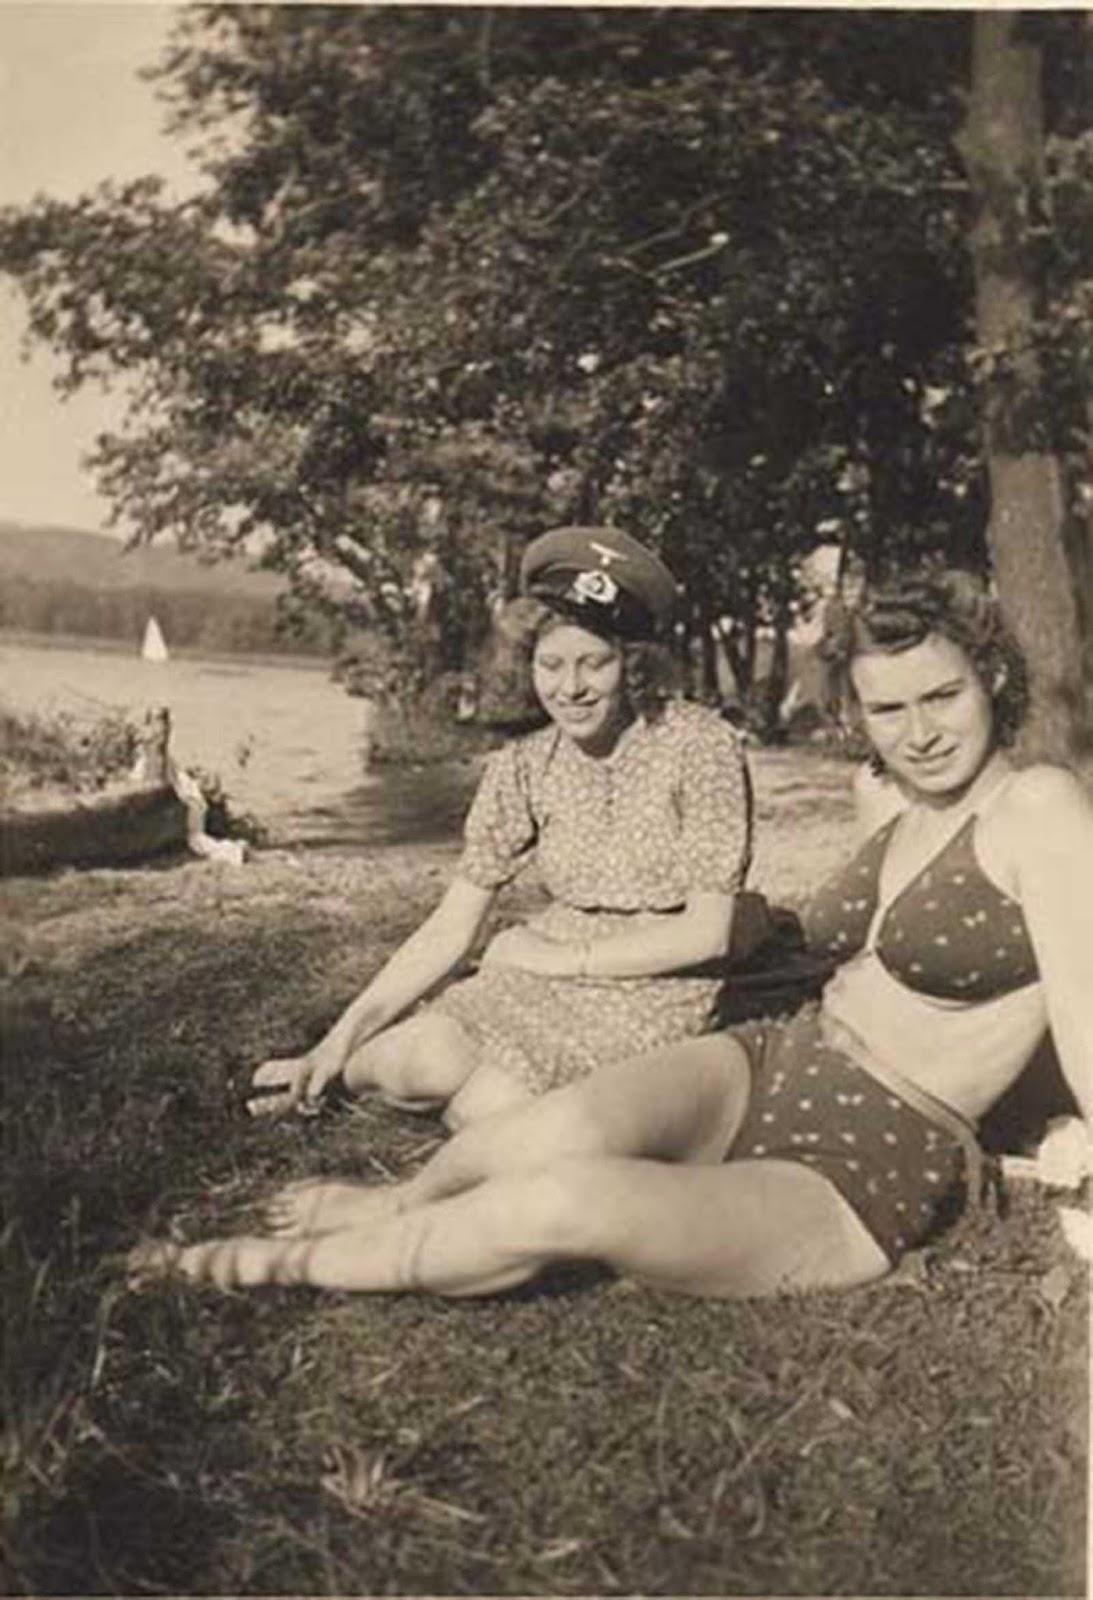 Dormir avec l'ennemi: Collaborateur filles de l'allemand, de l'Europe occupée, 1940-1944